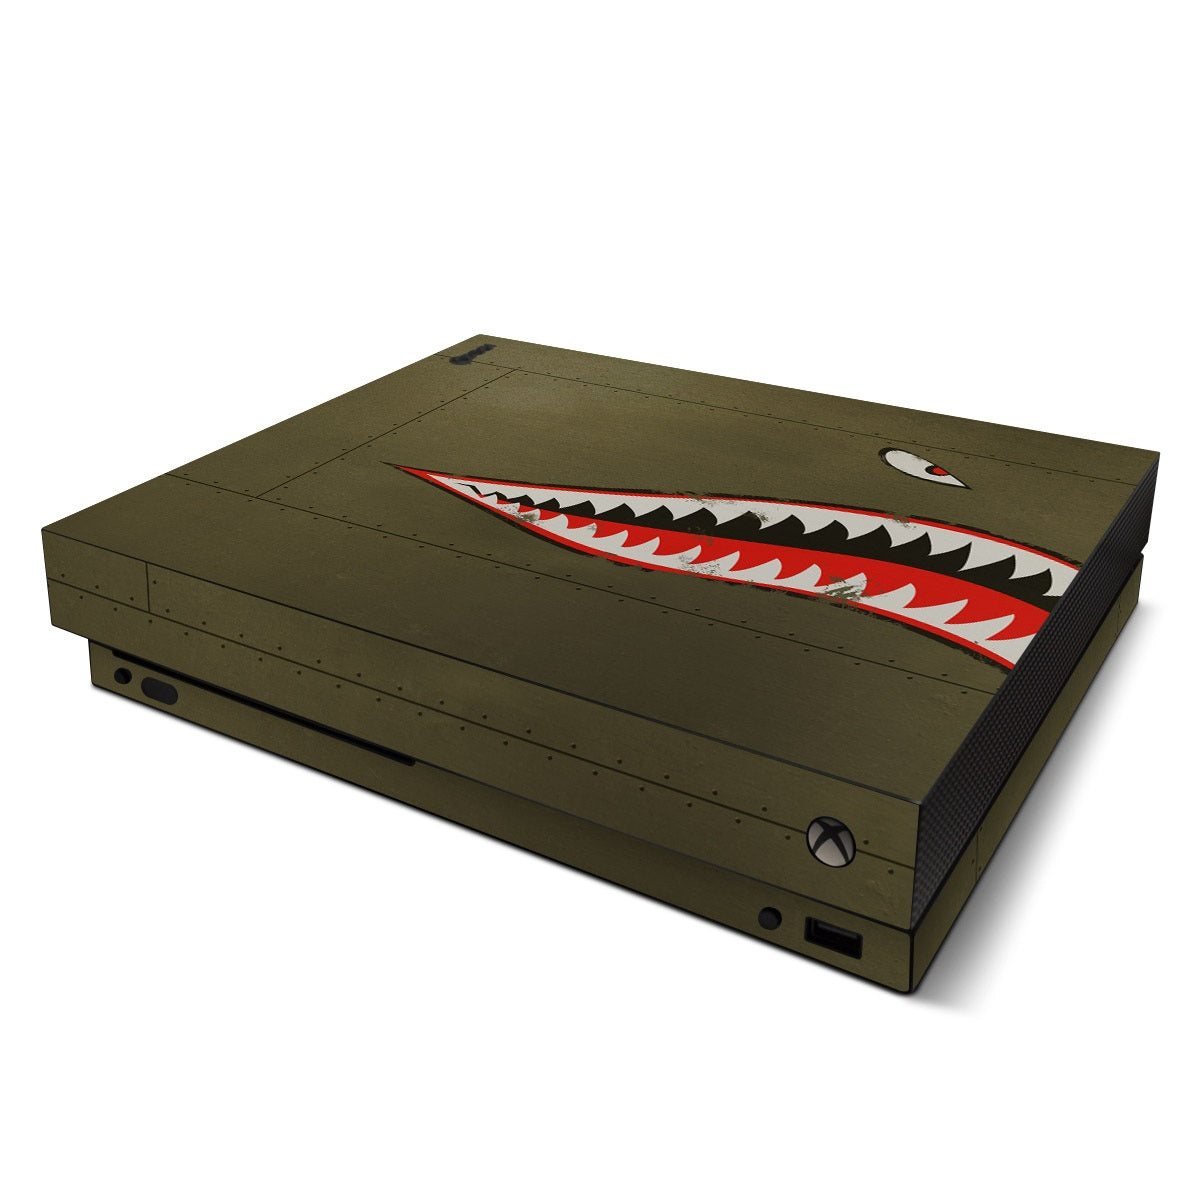 USAF Shark - Microsoft Xbox One X Skin